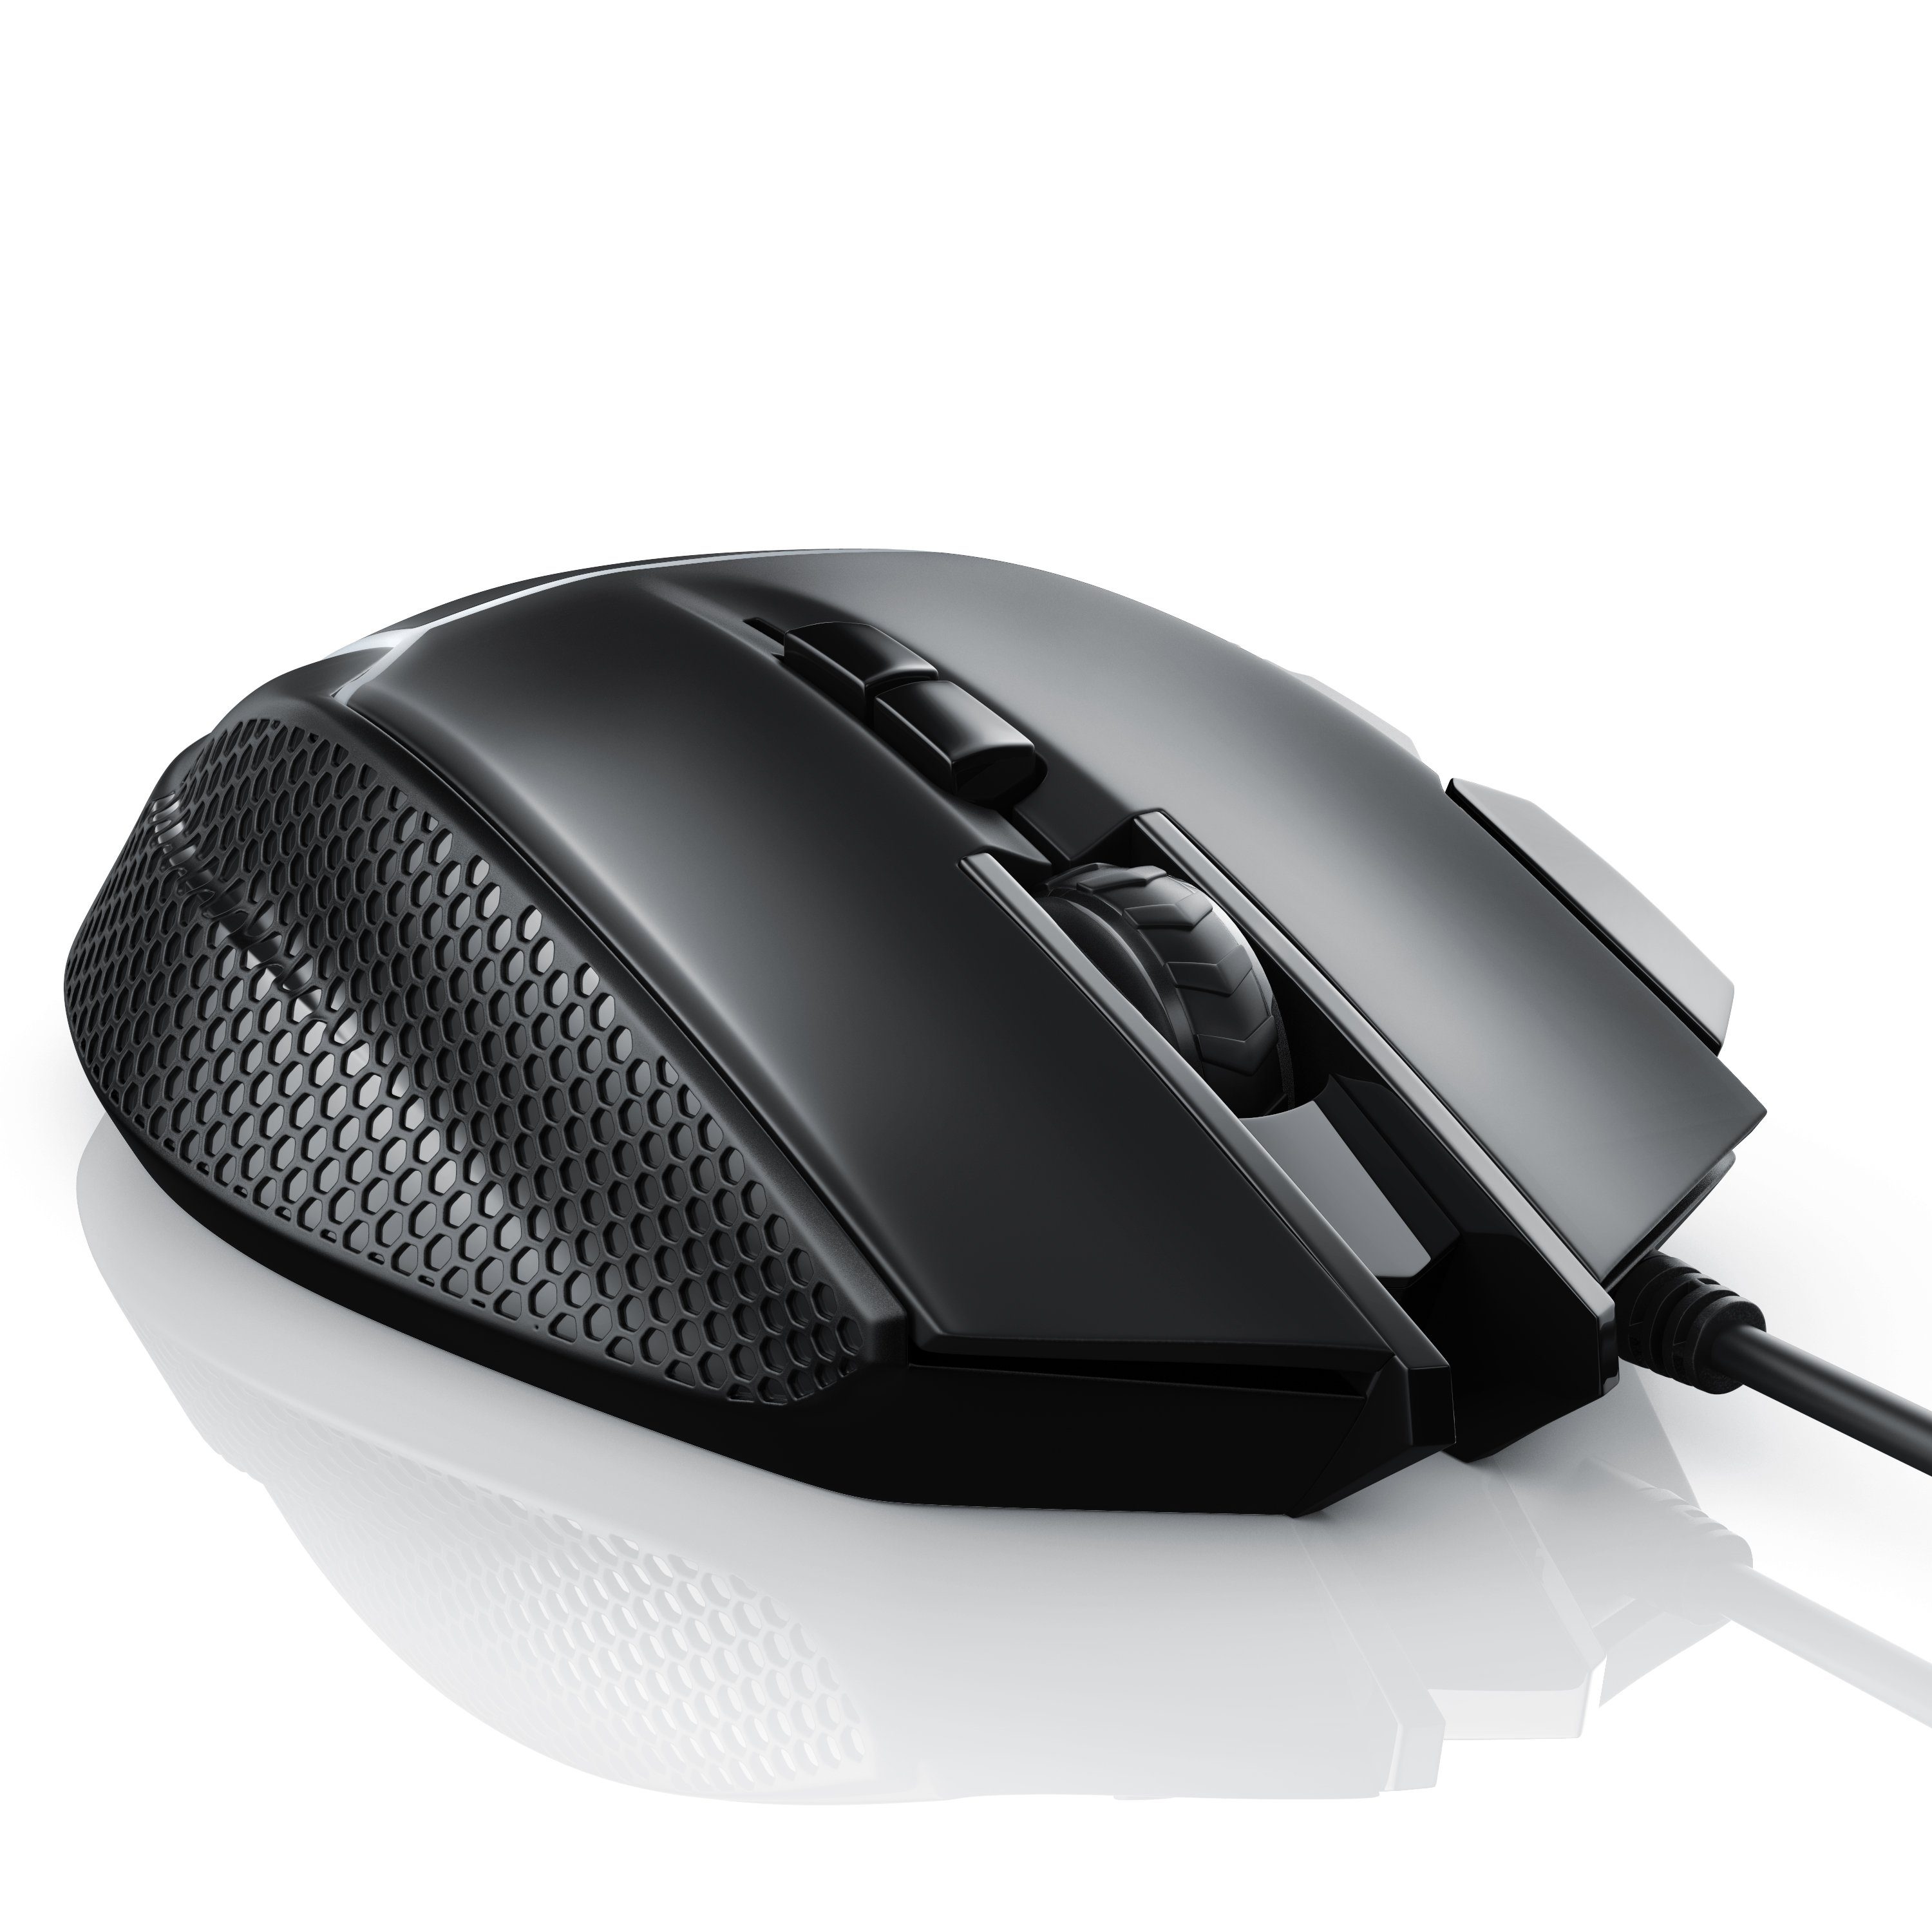 dpi, Gewichten) ergonomisch, Gaming-Maus Mouse dpi, (kabelgebunden, 500 Abtastrate CSL 3200 inkl. wählbar,